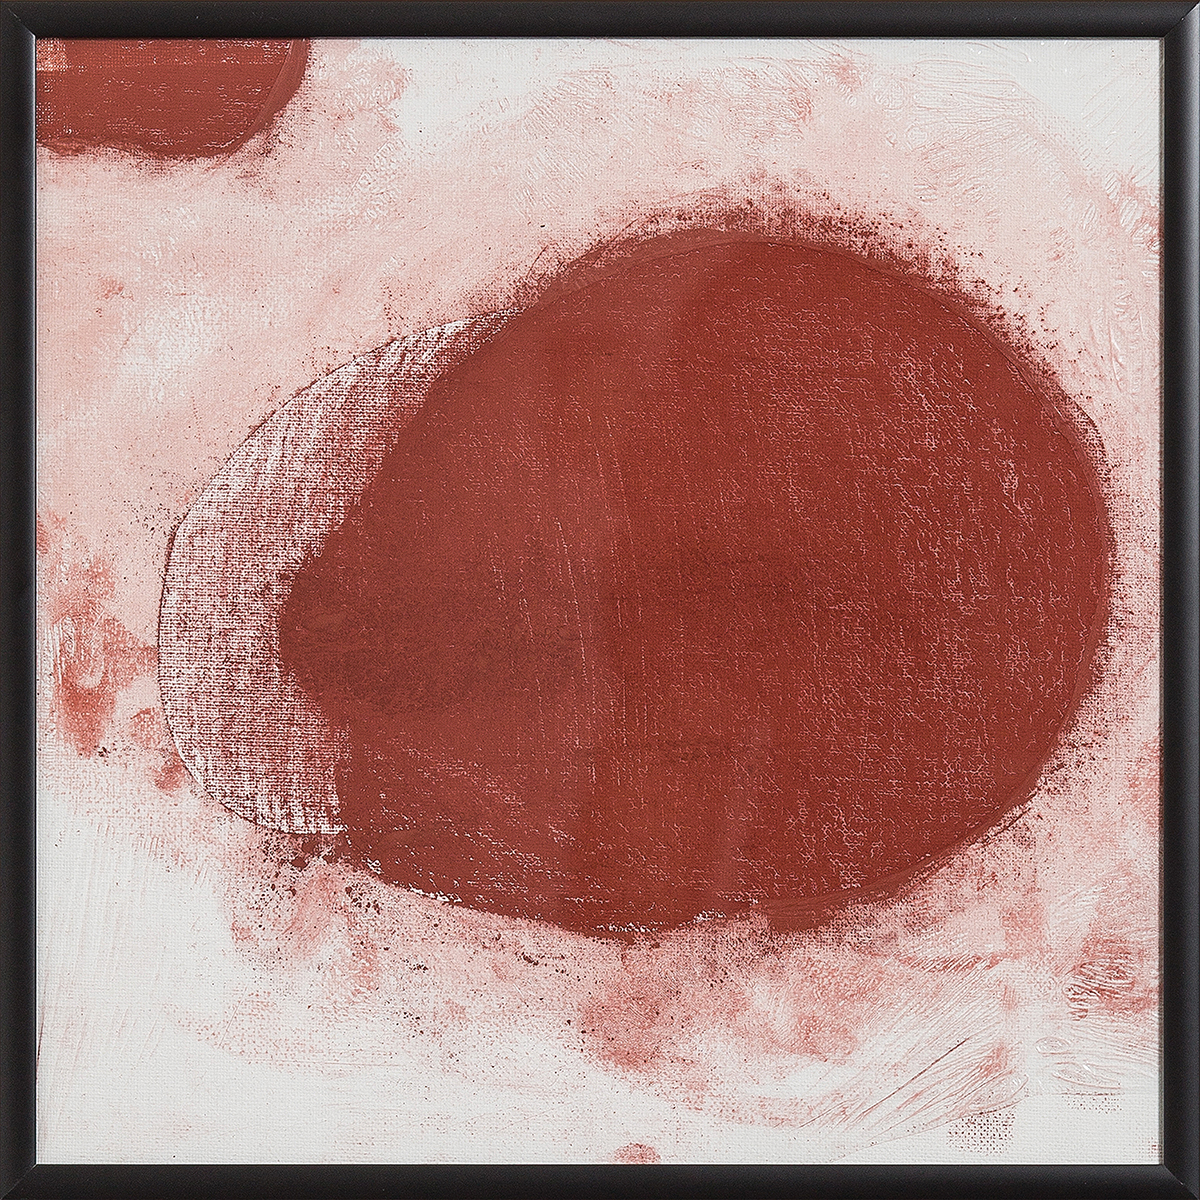 Frottements rouge 1, 201730 x 30 cmLeinwand auf Karton, einfoliert, Rötel-Pastellkreide;Alu-Wechselrahmen